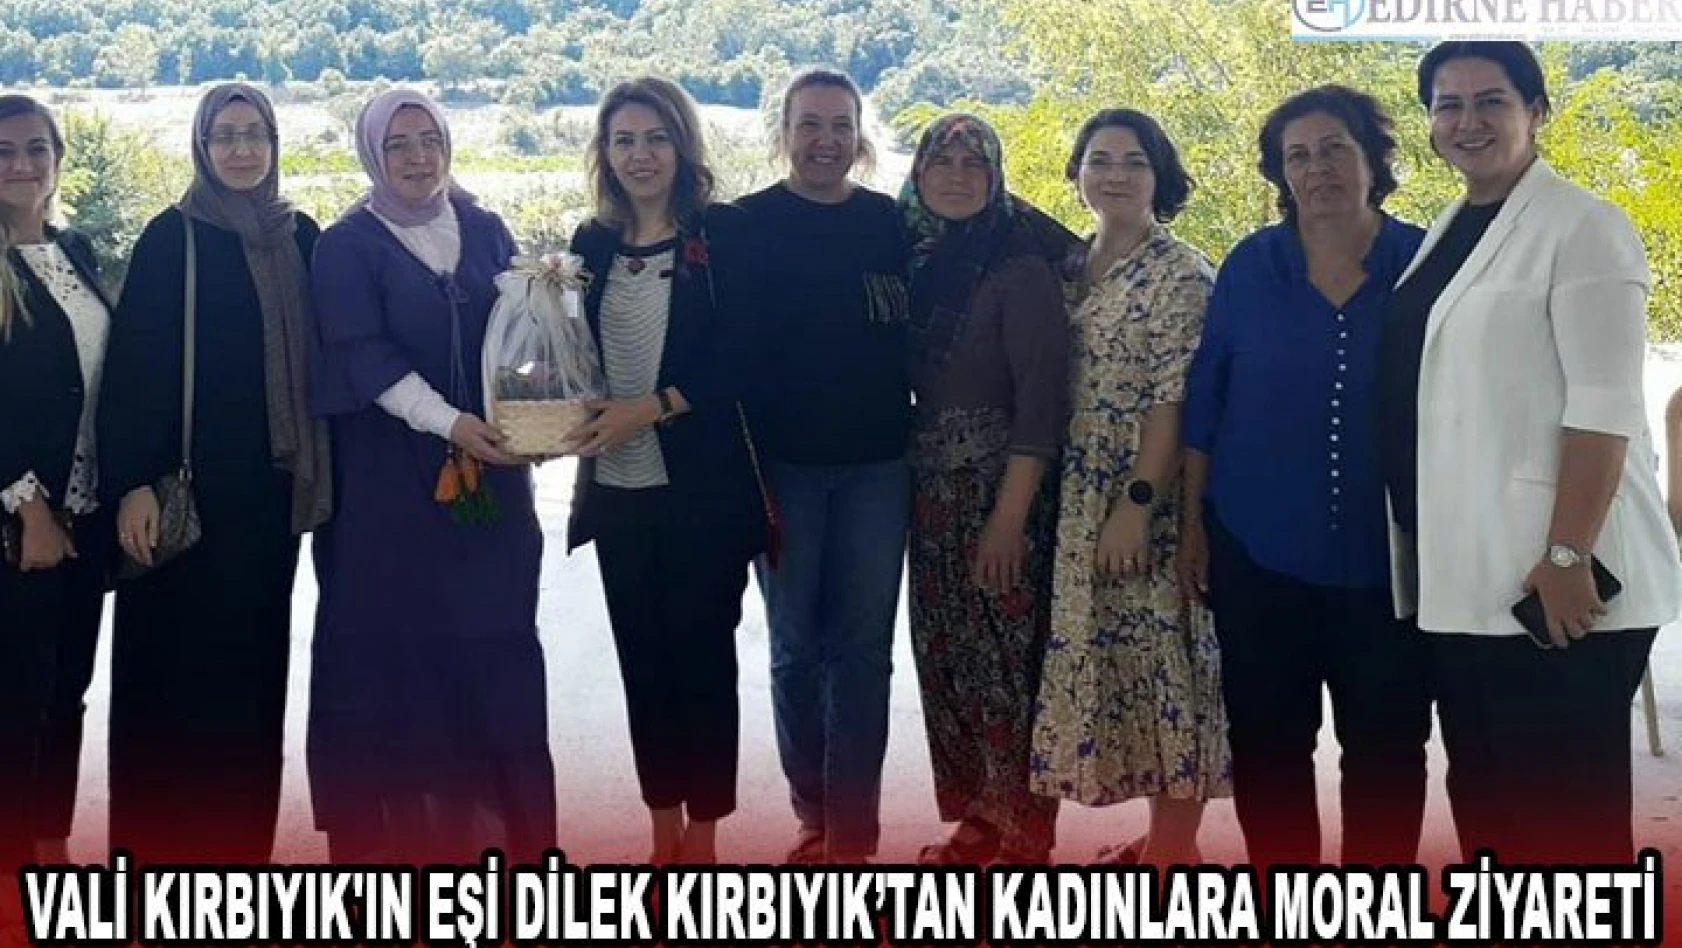 Vali Kırbıyık'ın Eşi Dilek Kırbıyık'tan kadınlara moral ziyareti